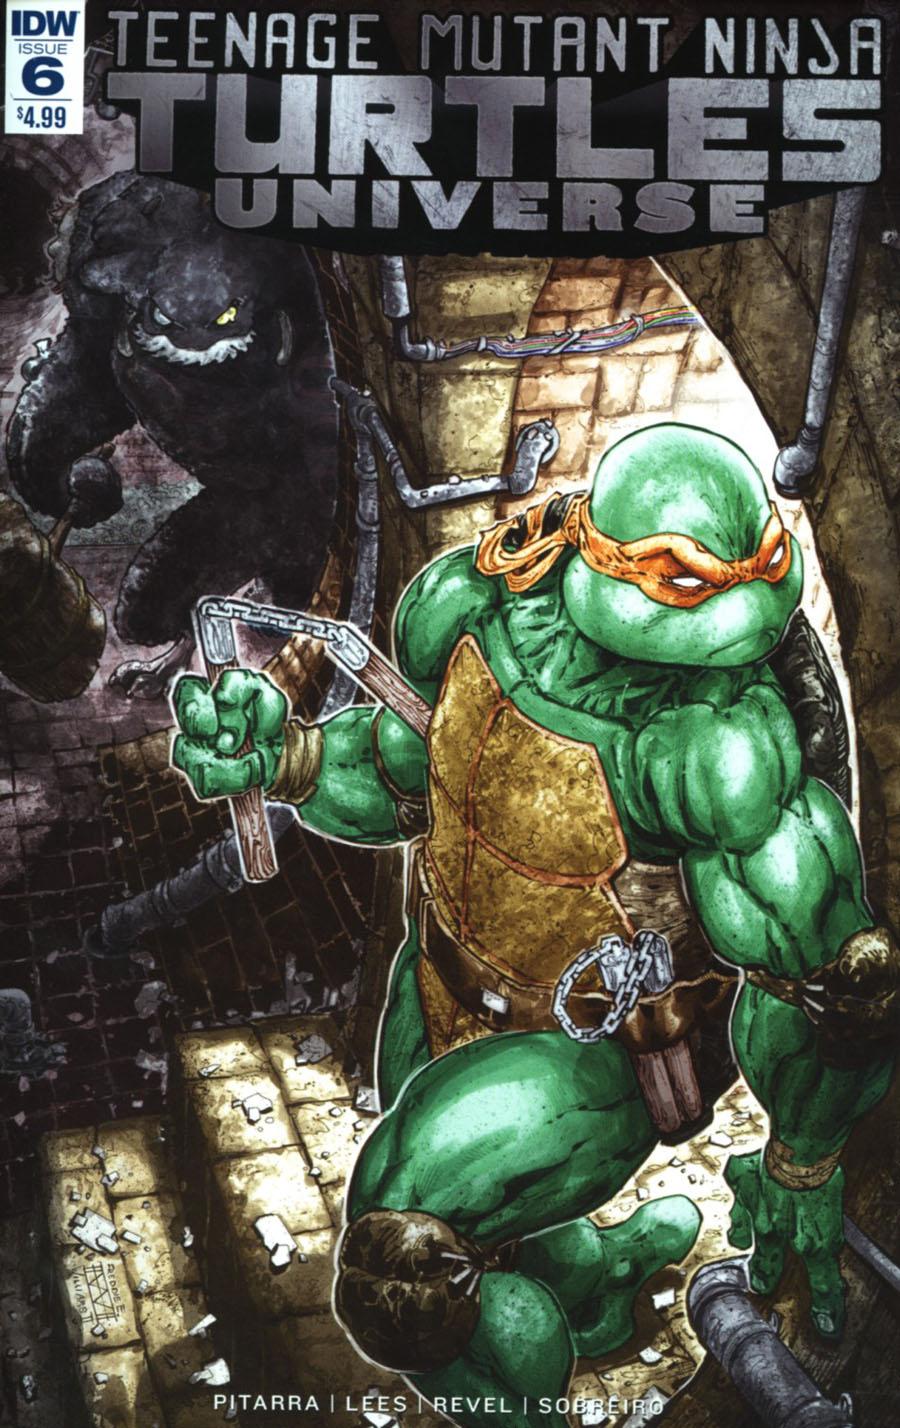 Teenage Mutant Ninja Turtles Universe Vol. 1 #6